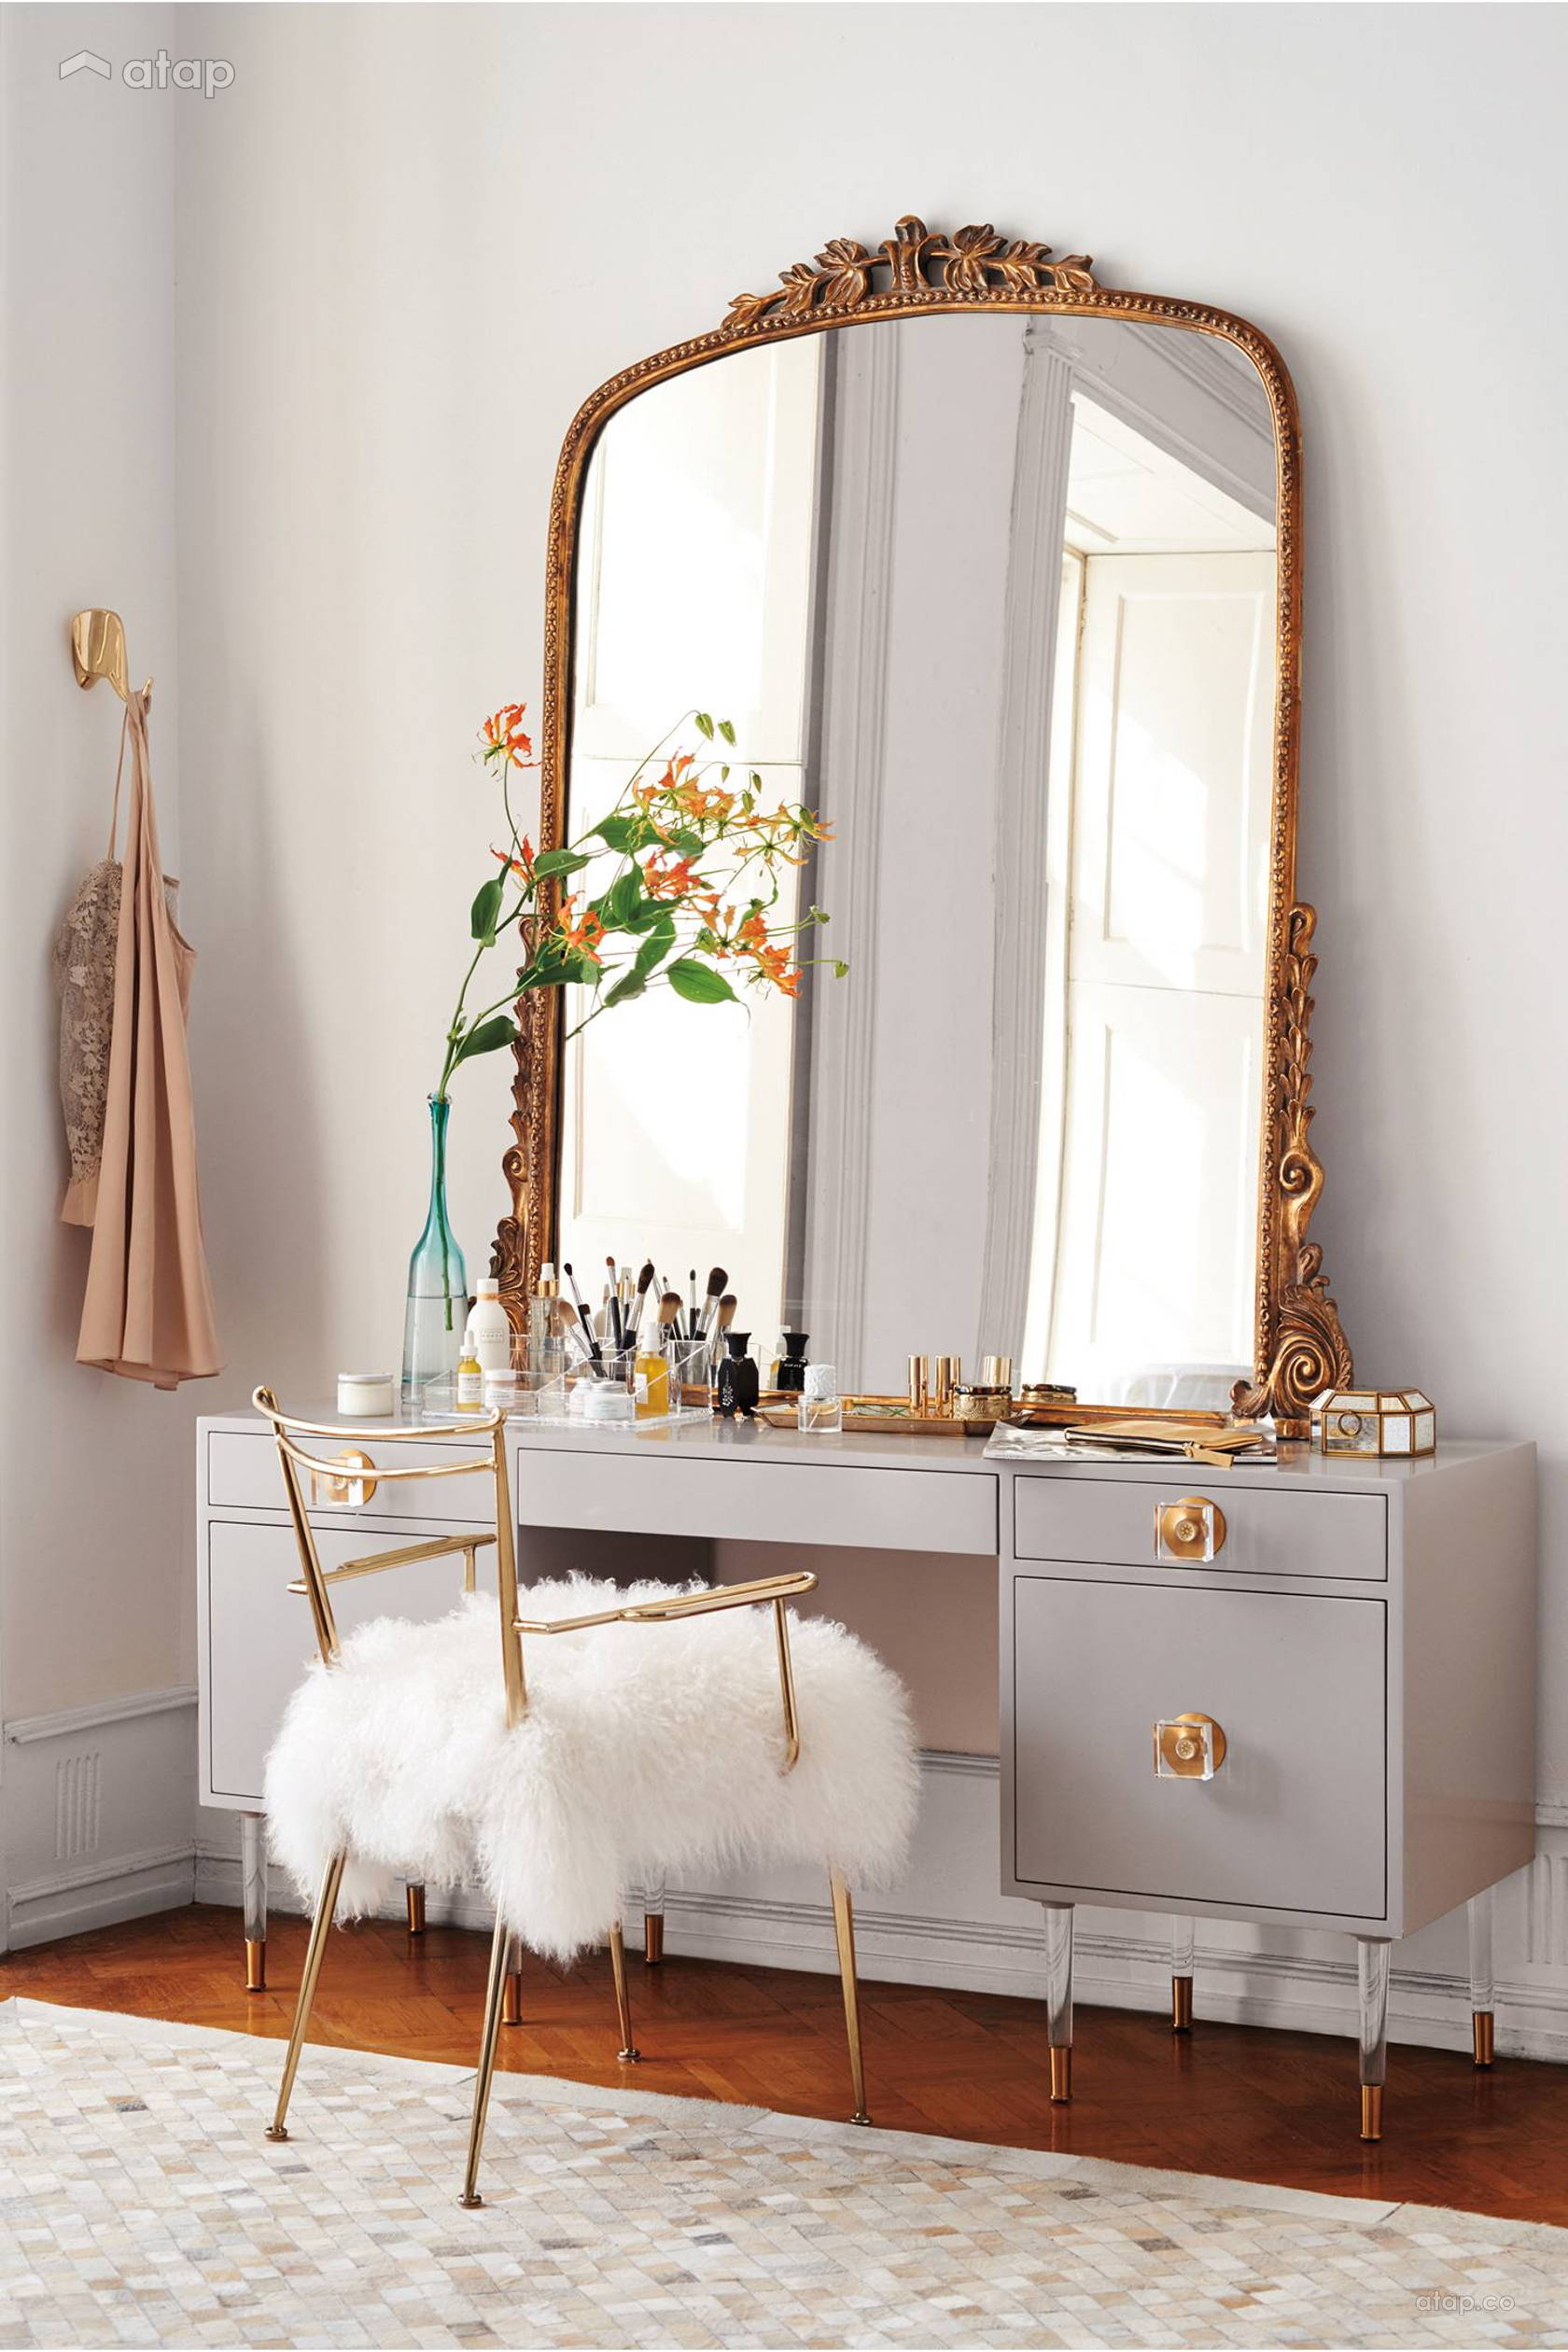 9 manières de décorer avec un miroir - coiffeuse decoration miroir chambre